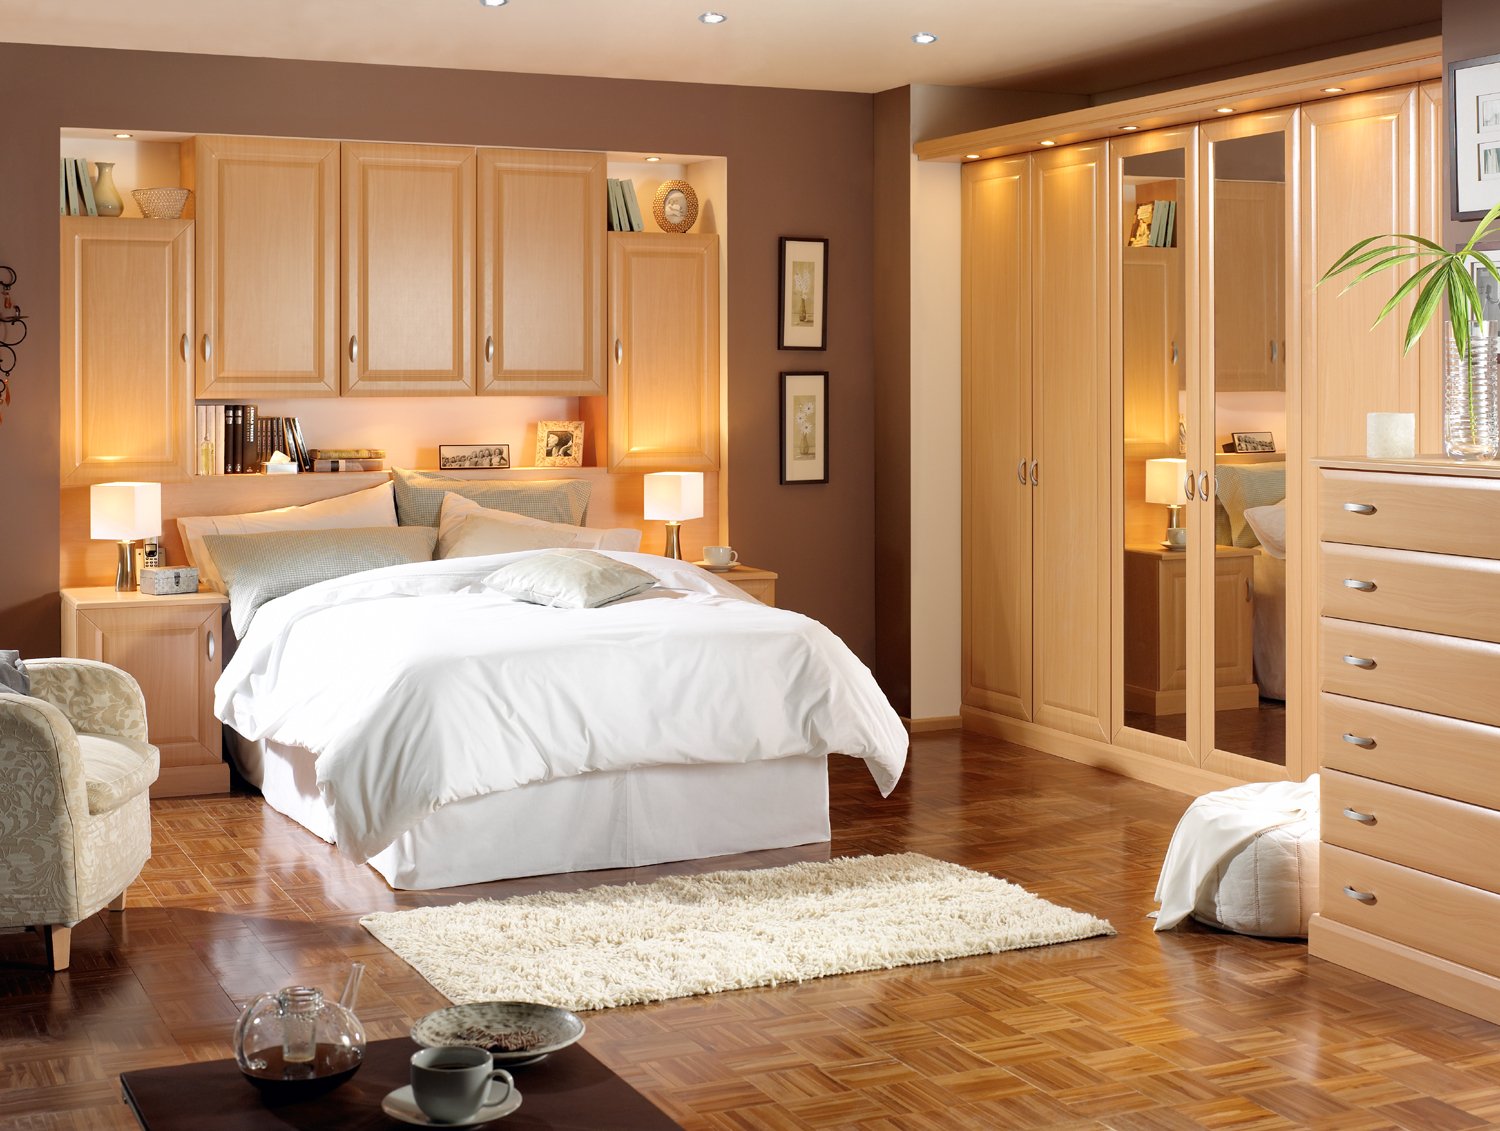 Interior Design Of Bedroom Indian